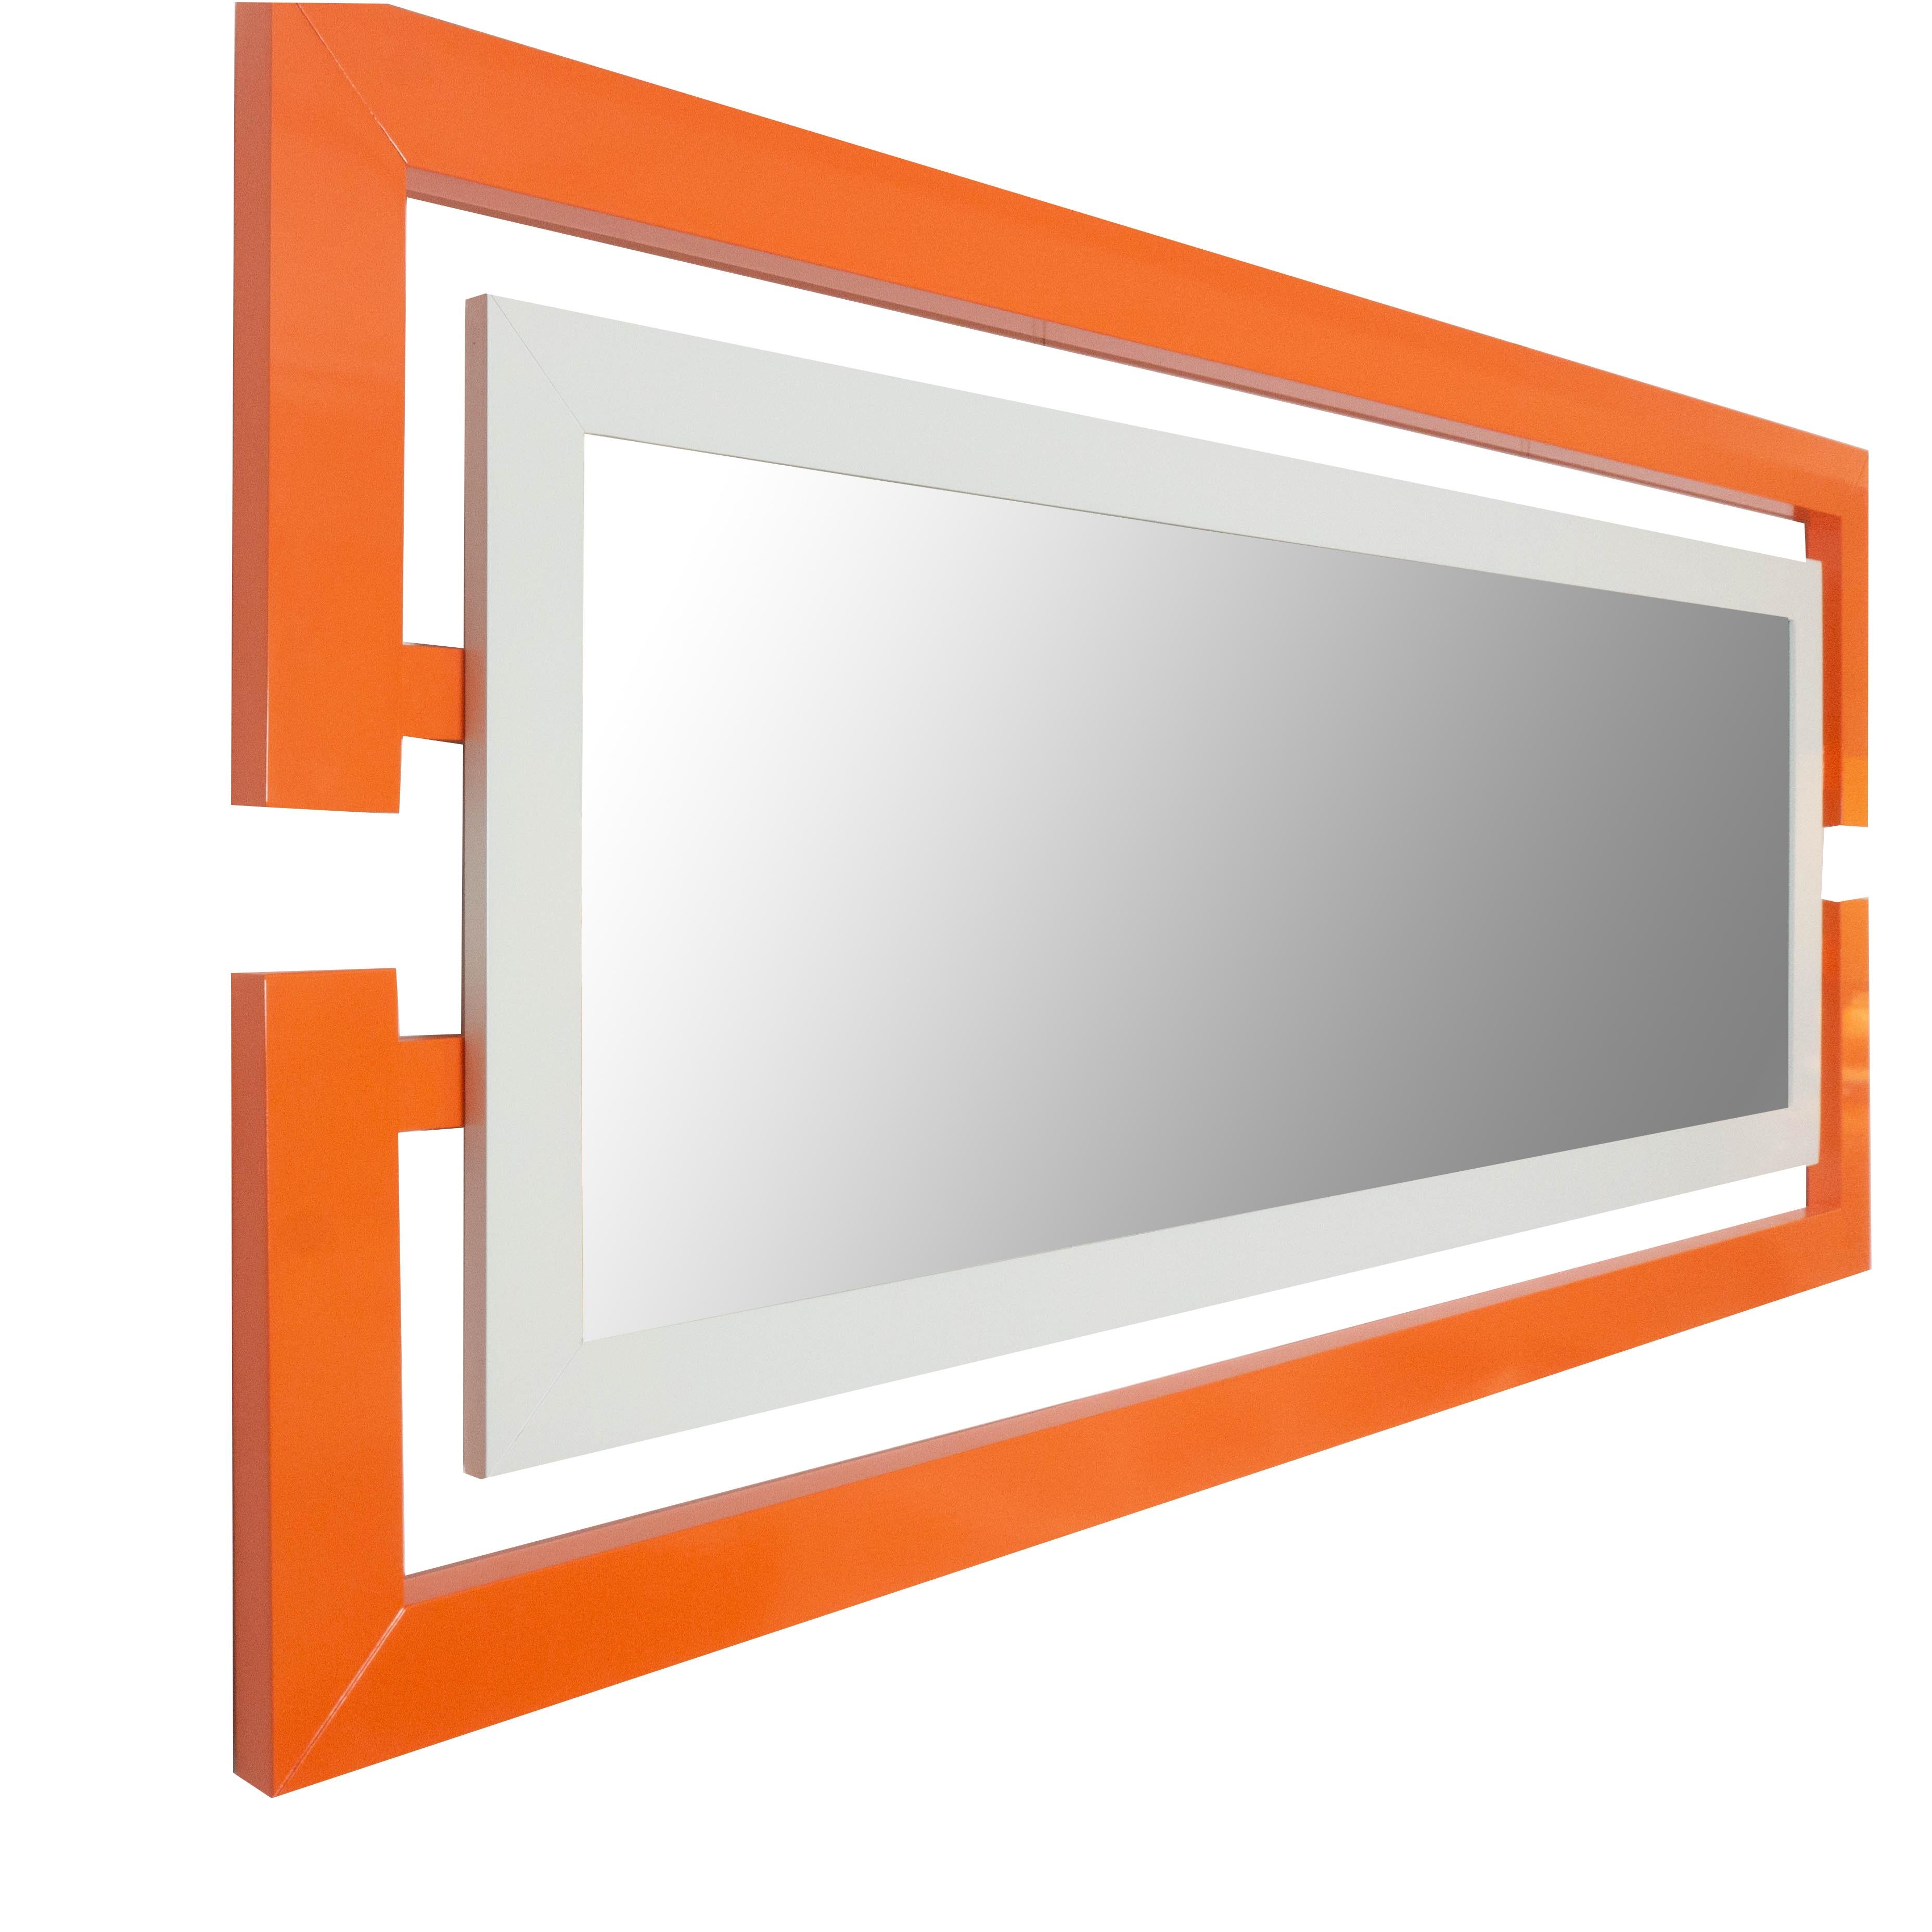 Dieser moderne, rechteckige, in mattem Orange lackierte Wandspiegel ist vom Weltraumzeitalter inspiriert und kann wie abgebildet gekauft oder nach Ihren Wünschen gestaltet werden. Handgefertigt in unserem Studio in Norwalk, Connecticut.